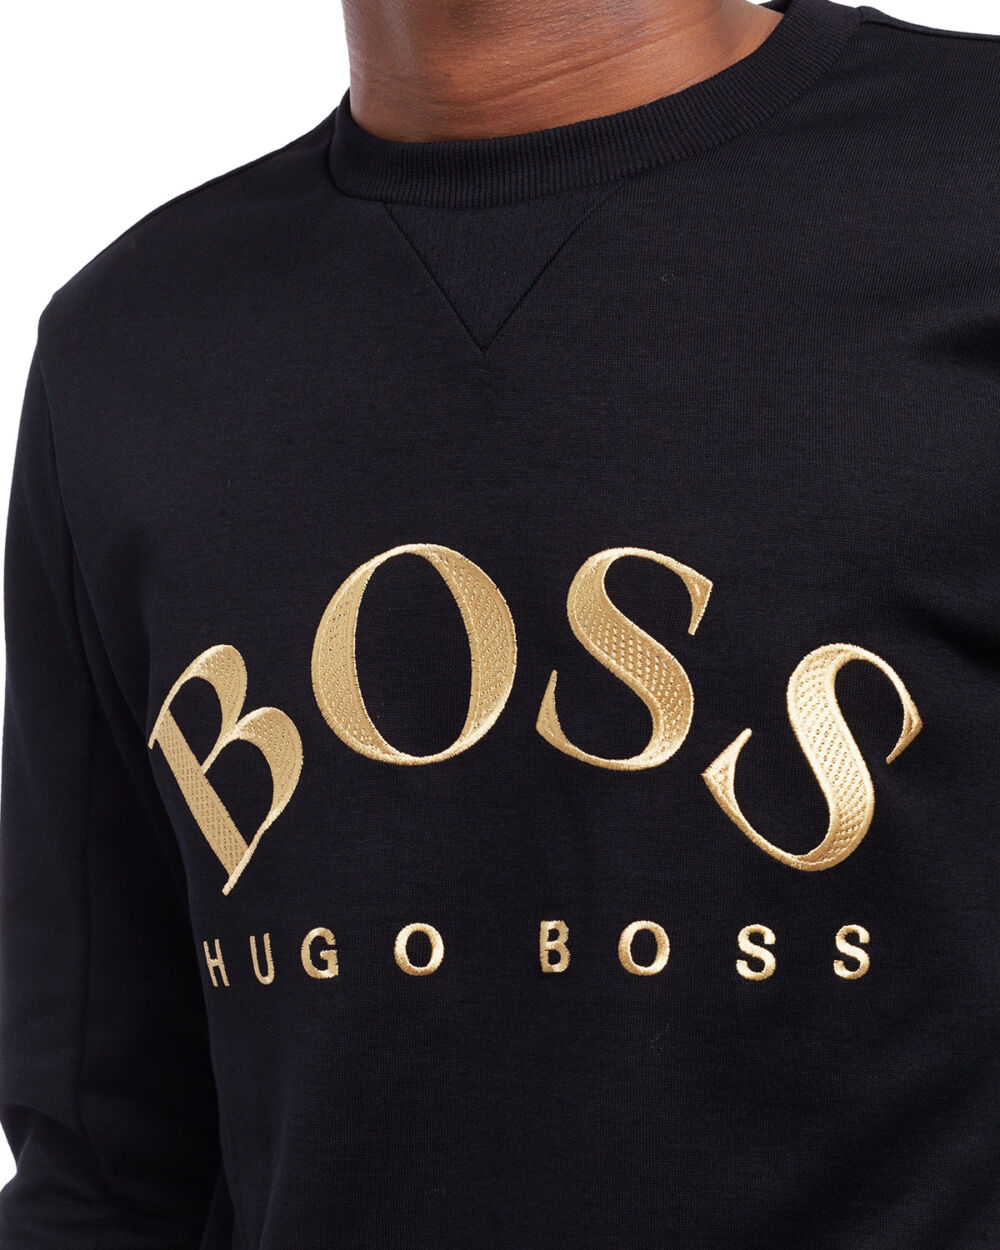 hugo boss hoodie black gold 